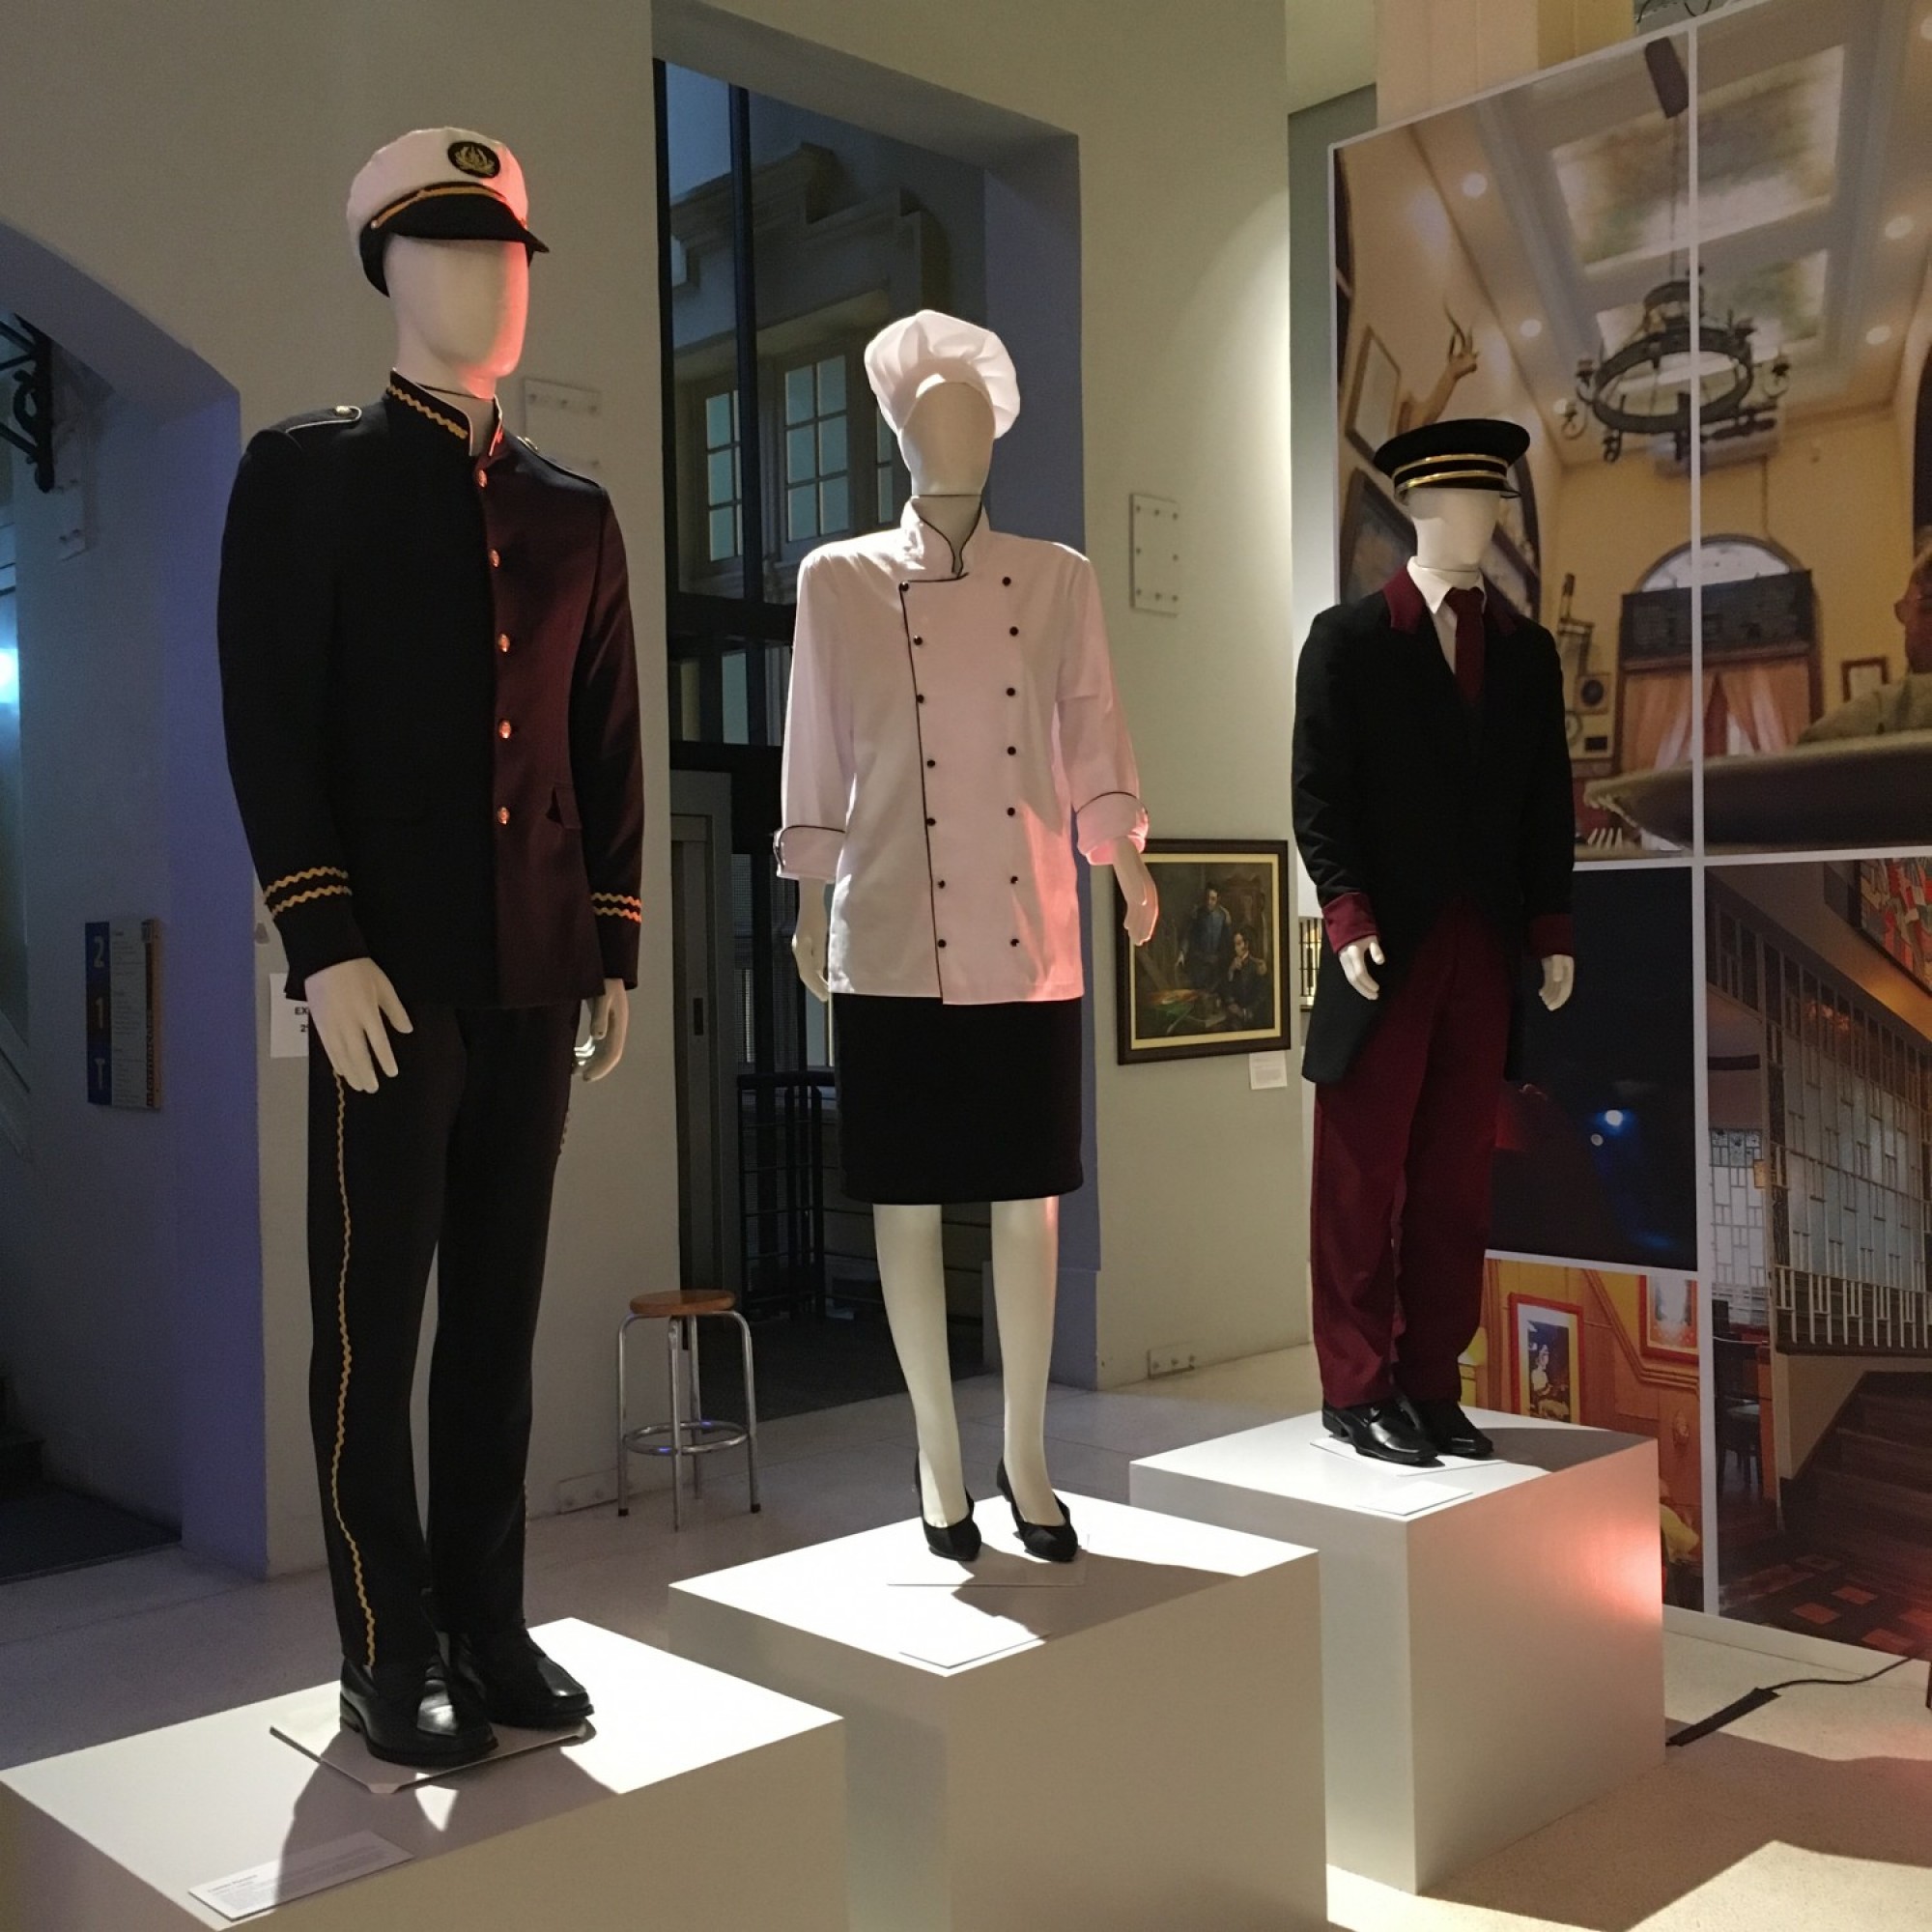 Exposição apresenta vestuários do século passado - Peças foram desenvolvidas pelos alunos do curso de Design da ESPM Sul
Roupas usadas por homens e... 